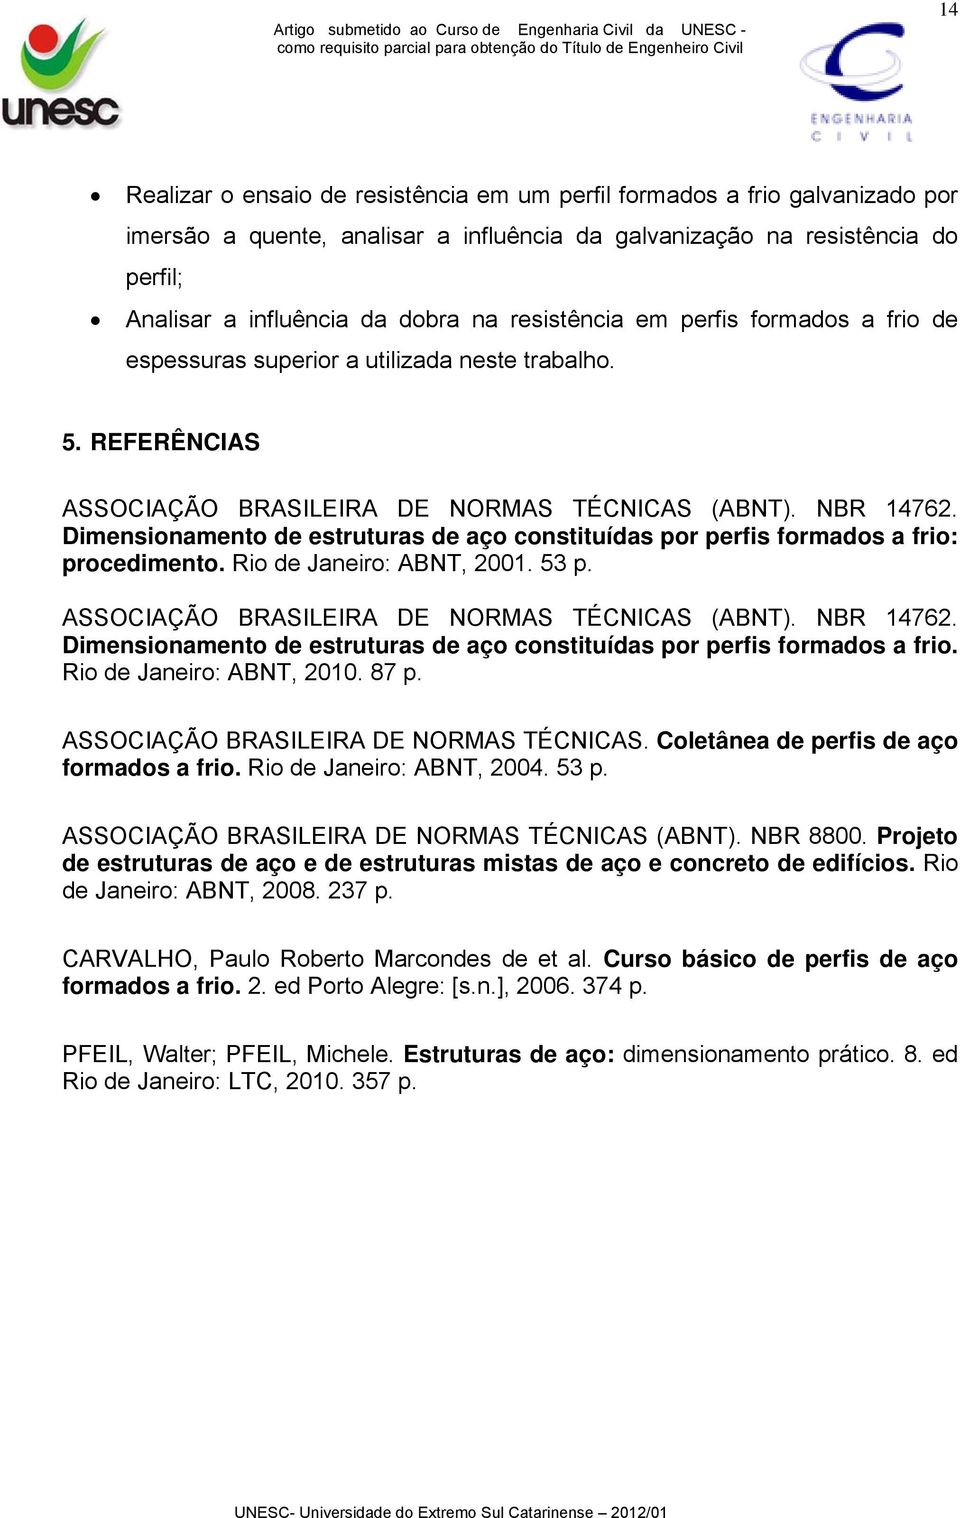 Dimensionamento de estruturas de aço constituídas por perfis formados a frio: procedimento. Rio de Janeiro: ABNT, 2001. 53 p. ASSOCIAÇÃO BRASILEIRA DE NORMAS TÉCNICAS (ABNT). NBR 14762.